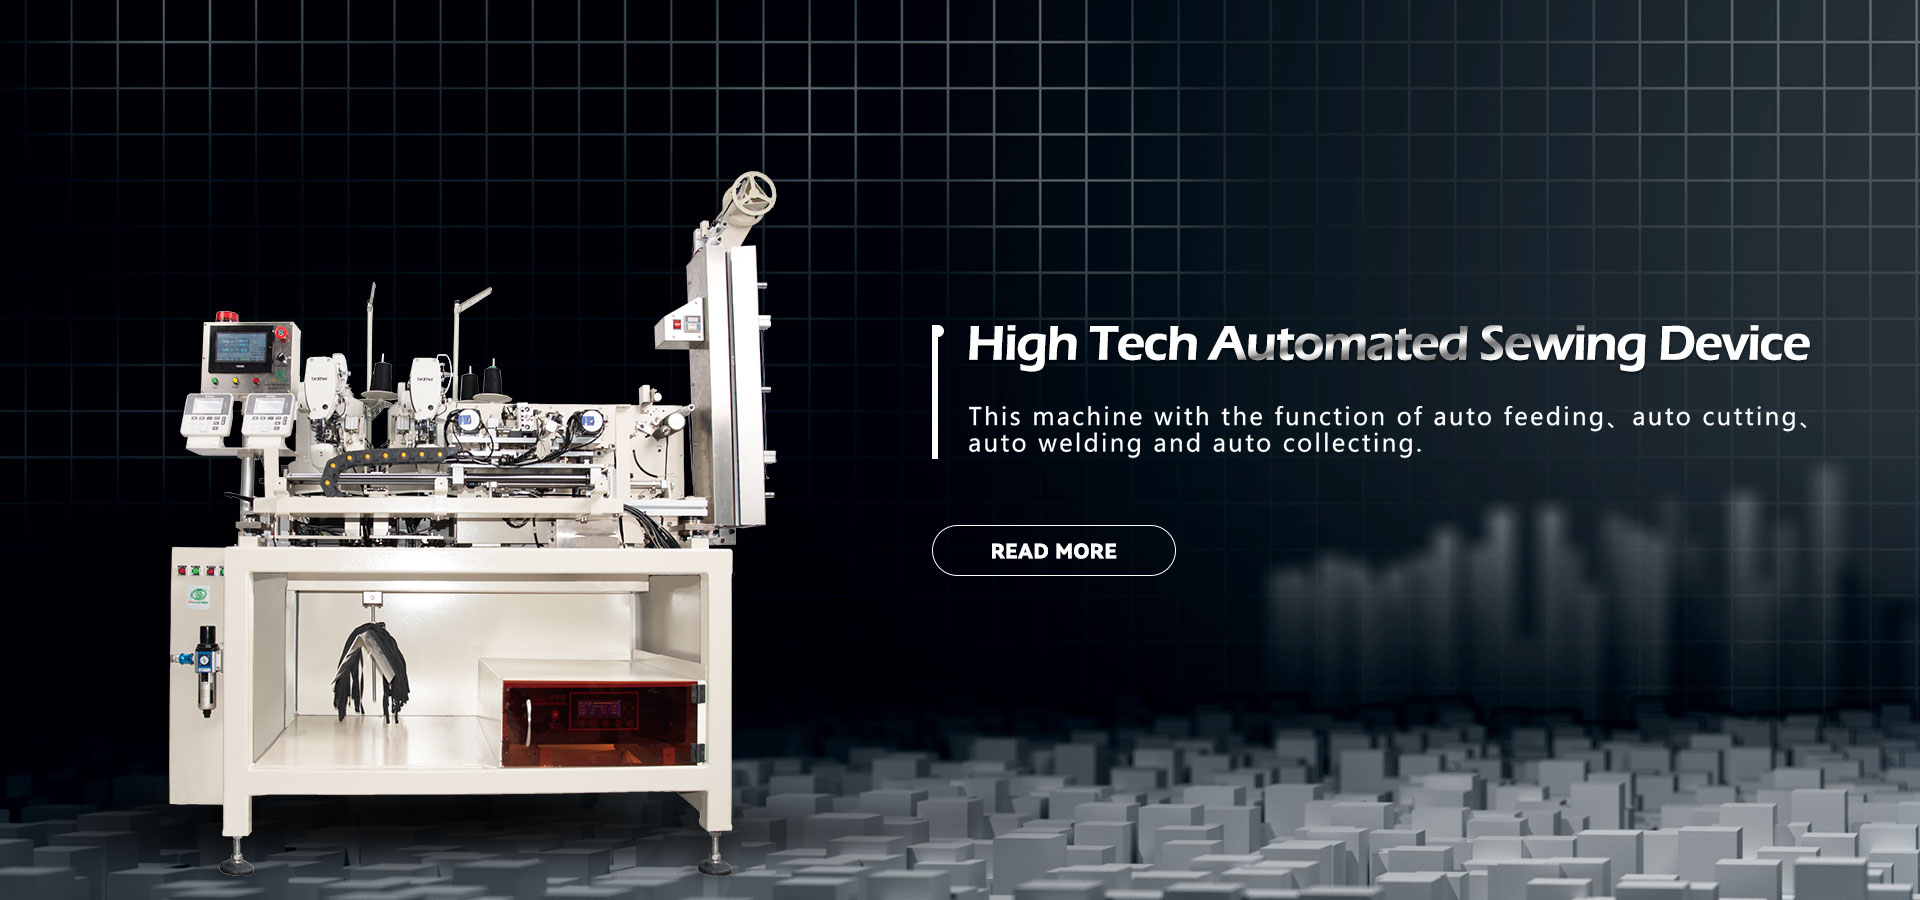 Aukštųjų technologijų automatizuotų siuvimo įrenginių gamintojai